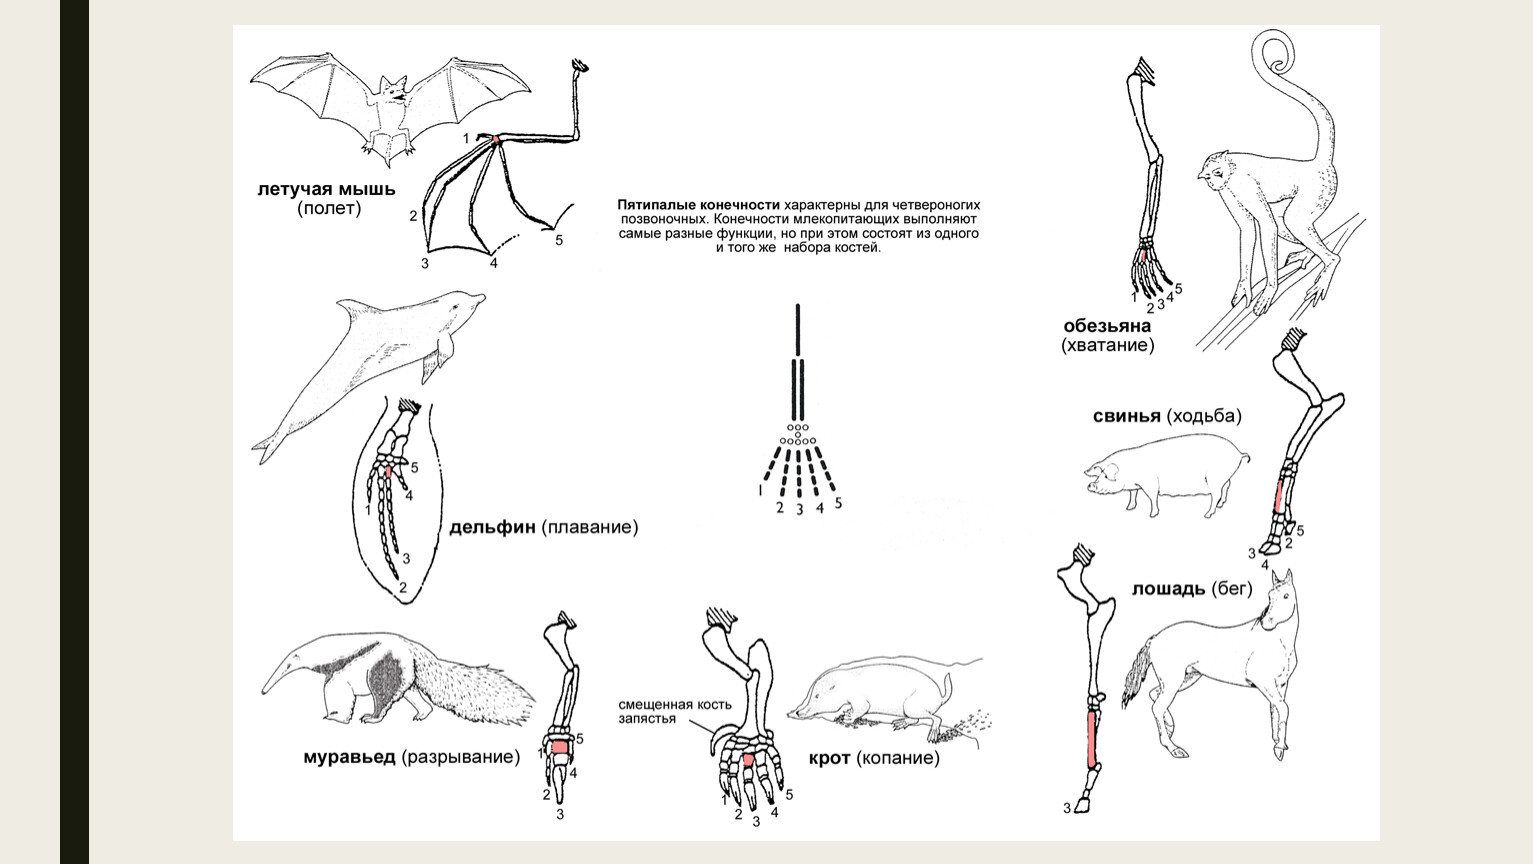 Ласты кита и роющие конечности крота. Скелет передней конечности млекопитающих. Строение передних конечностей млекопитающих. Строение скелета передних конечностей млекопитающих. Скелет передних и задних конечностей млекопитающих.